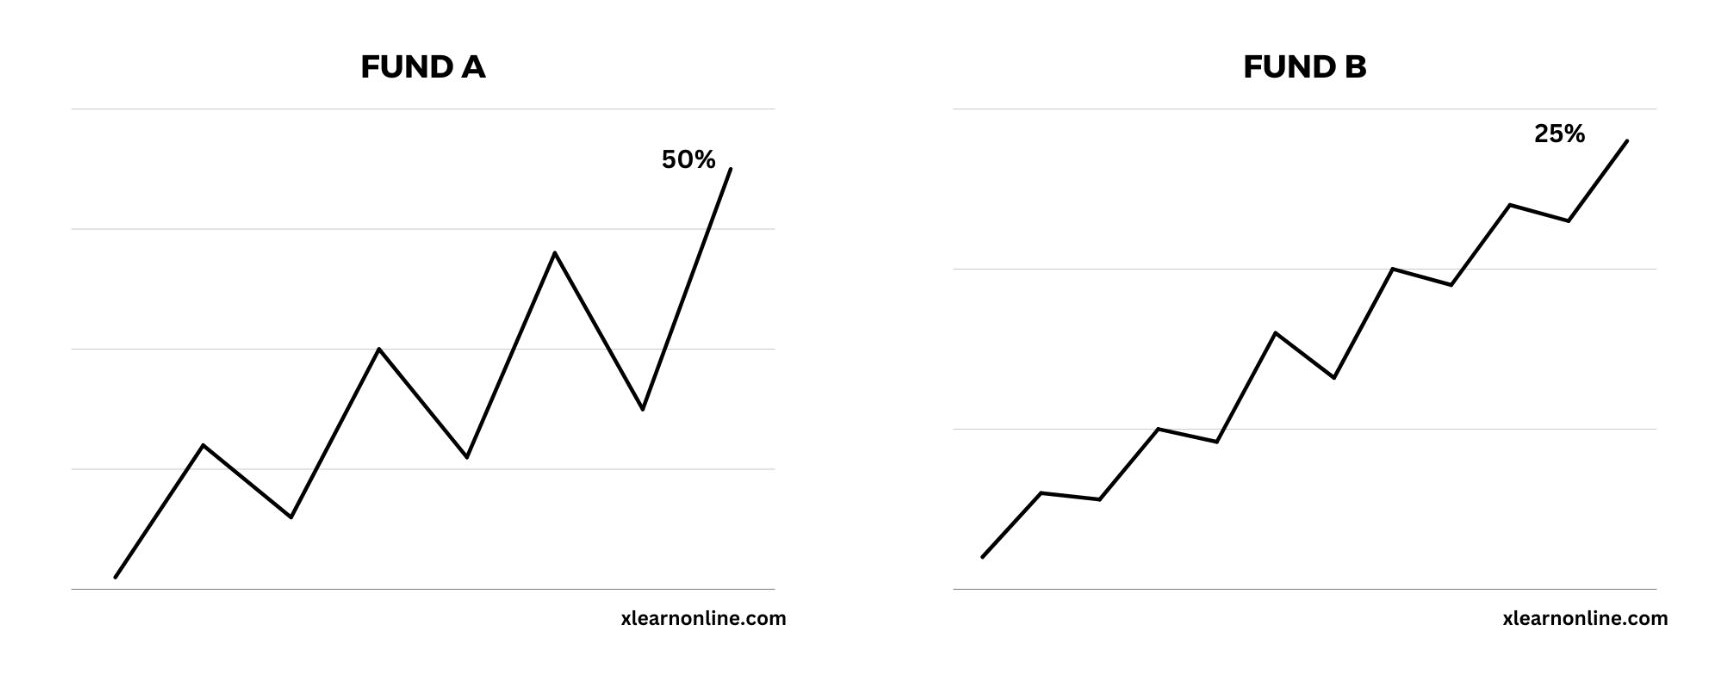 Sharpe ratio mutual fund comparison
xlearnonline.com